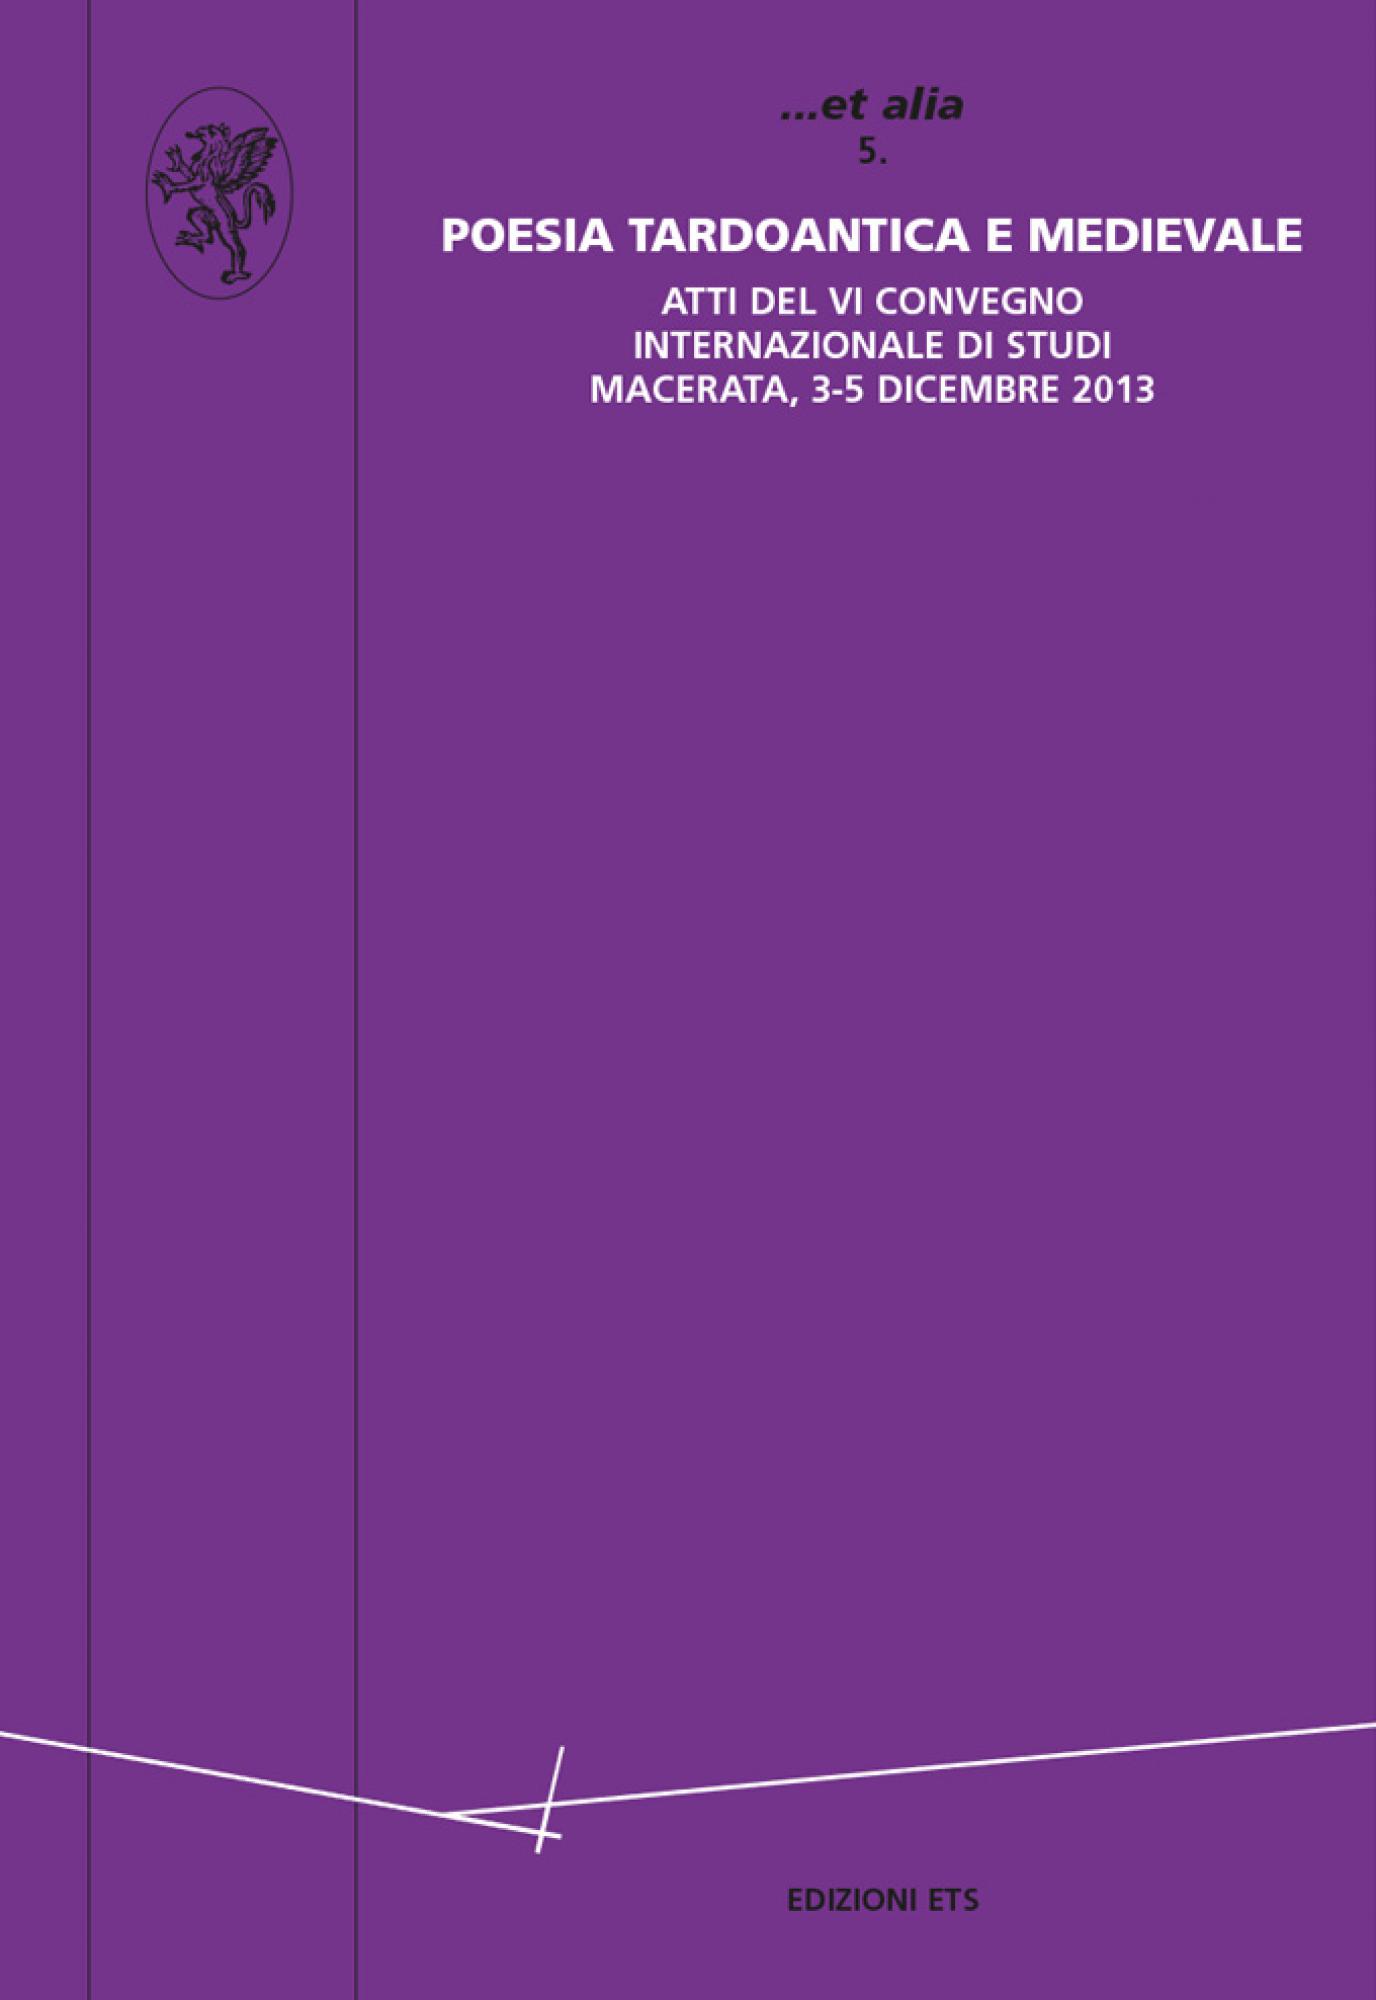 Poesia tardoantica e medievale.Atti del VI Convegno internazionale di studi, Macerata, 3-5 dicembre 2013